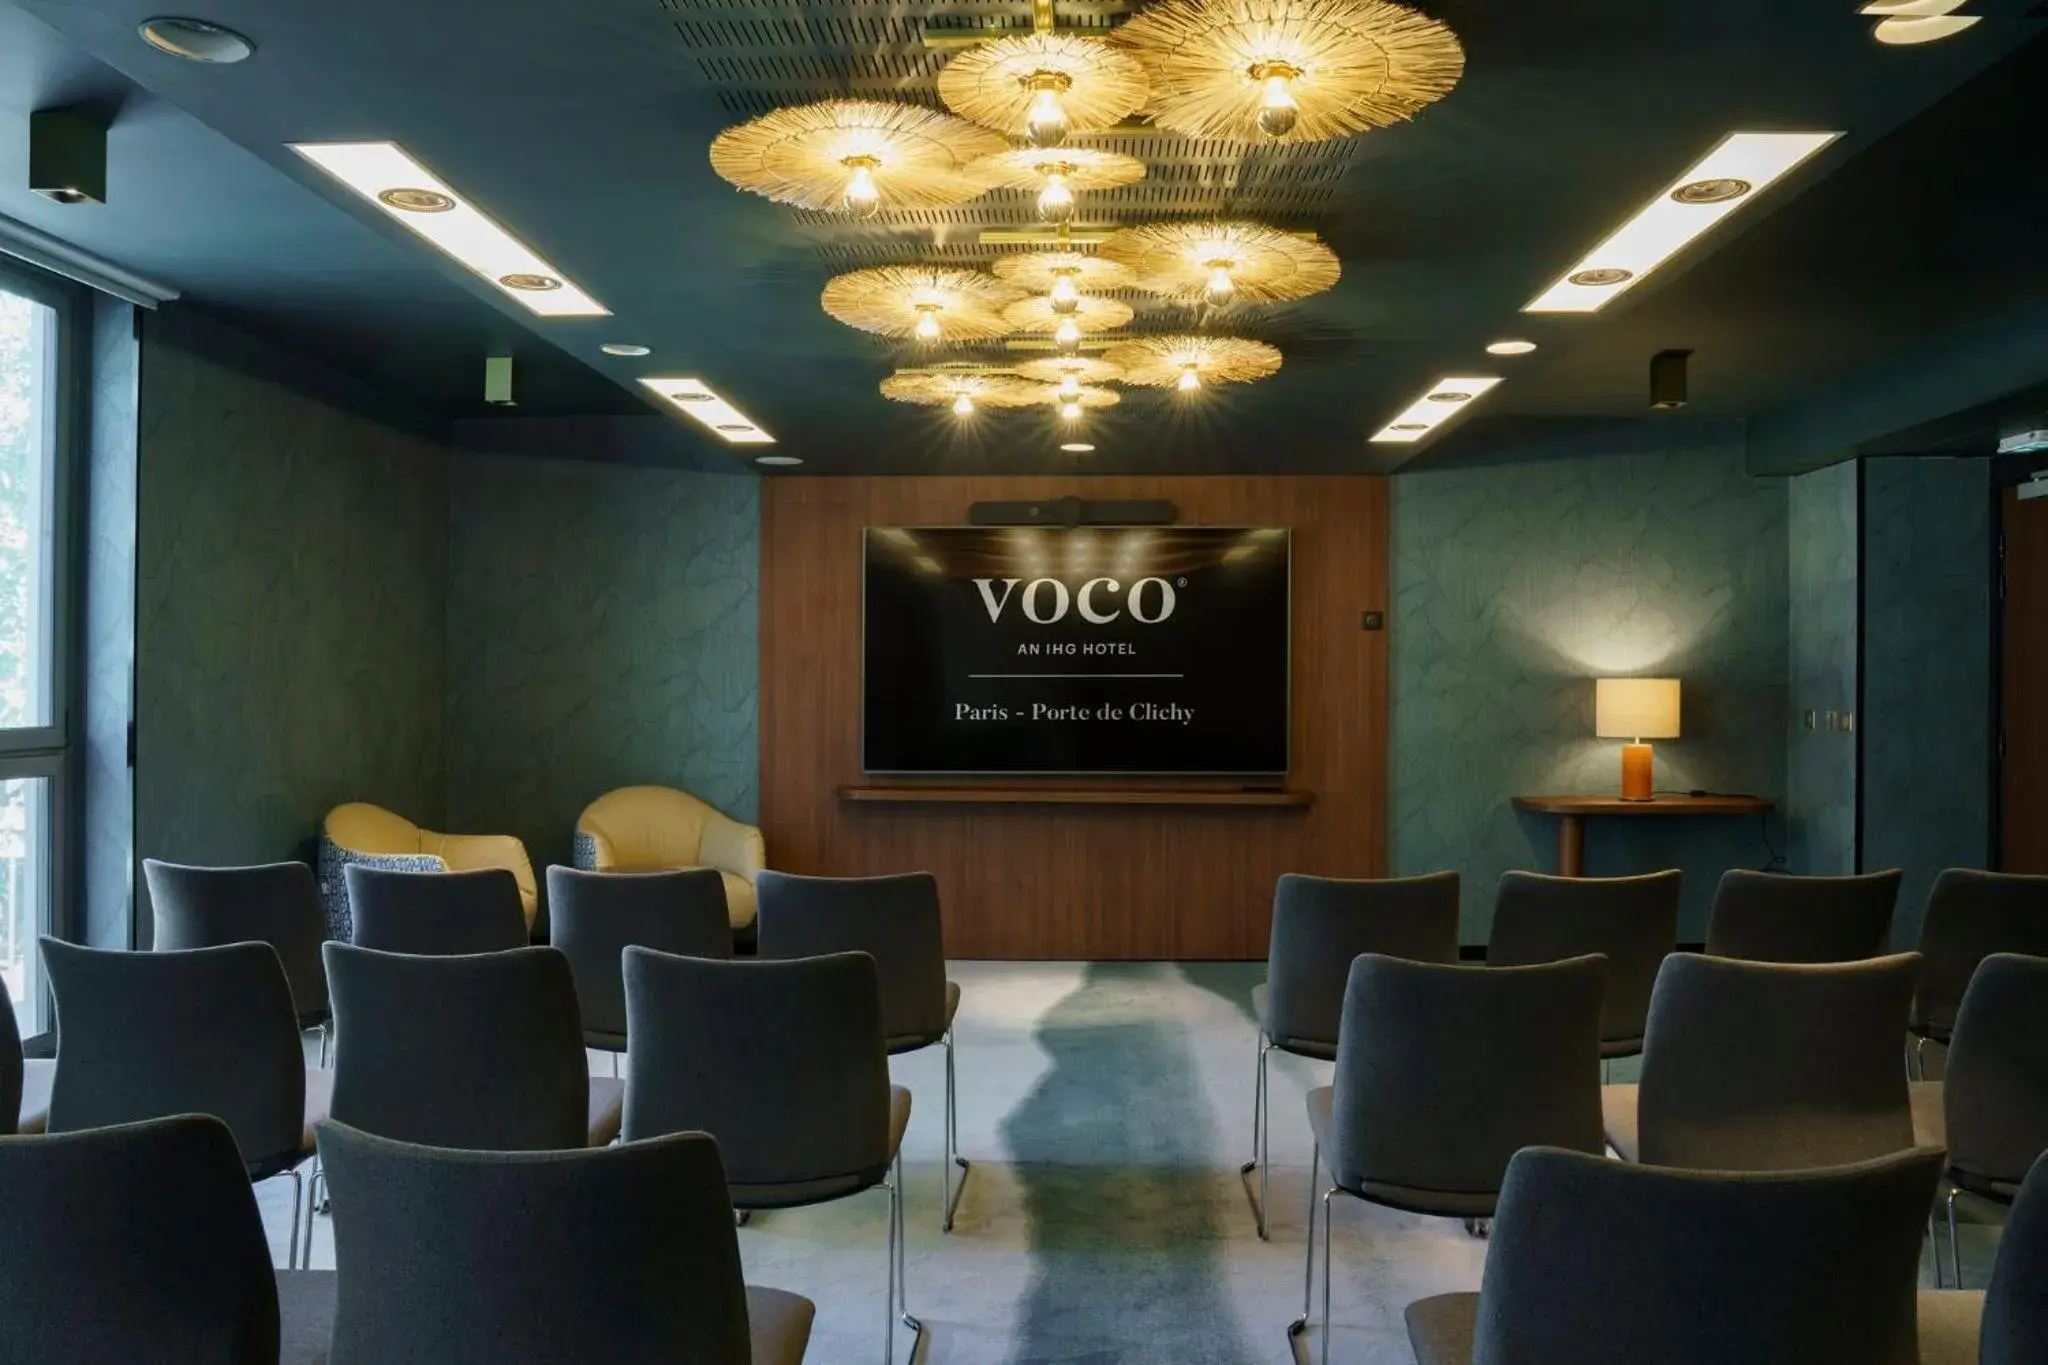 Meeting/conference room in voco Paris - Porte de Clichy, an IHG Hotel